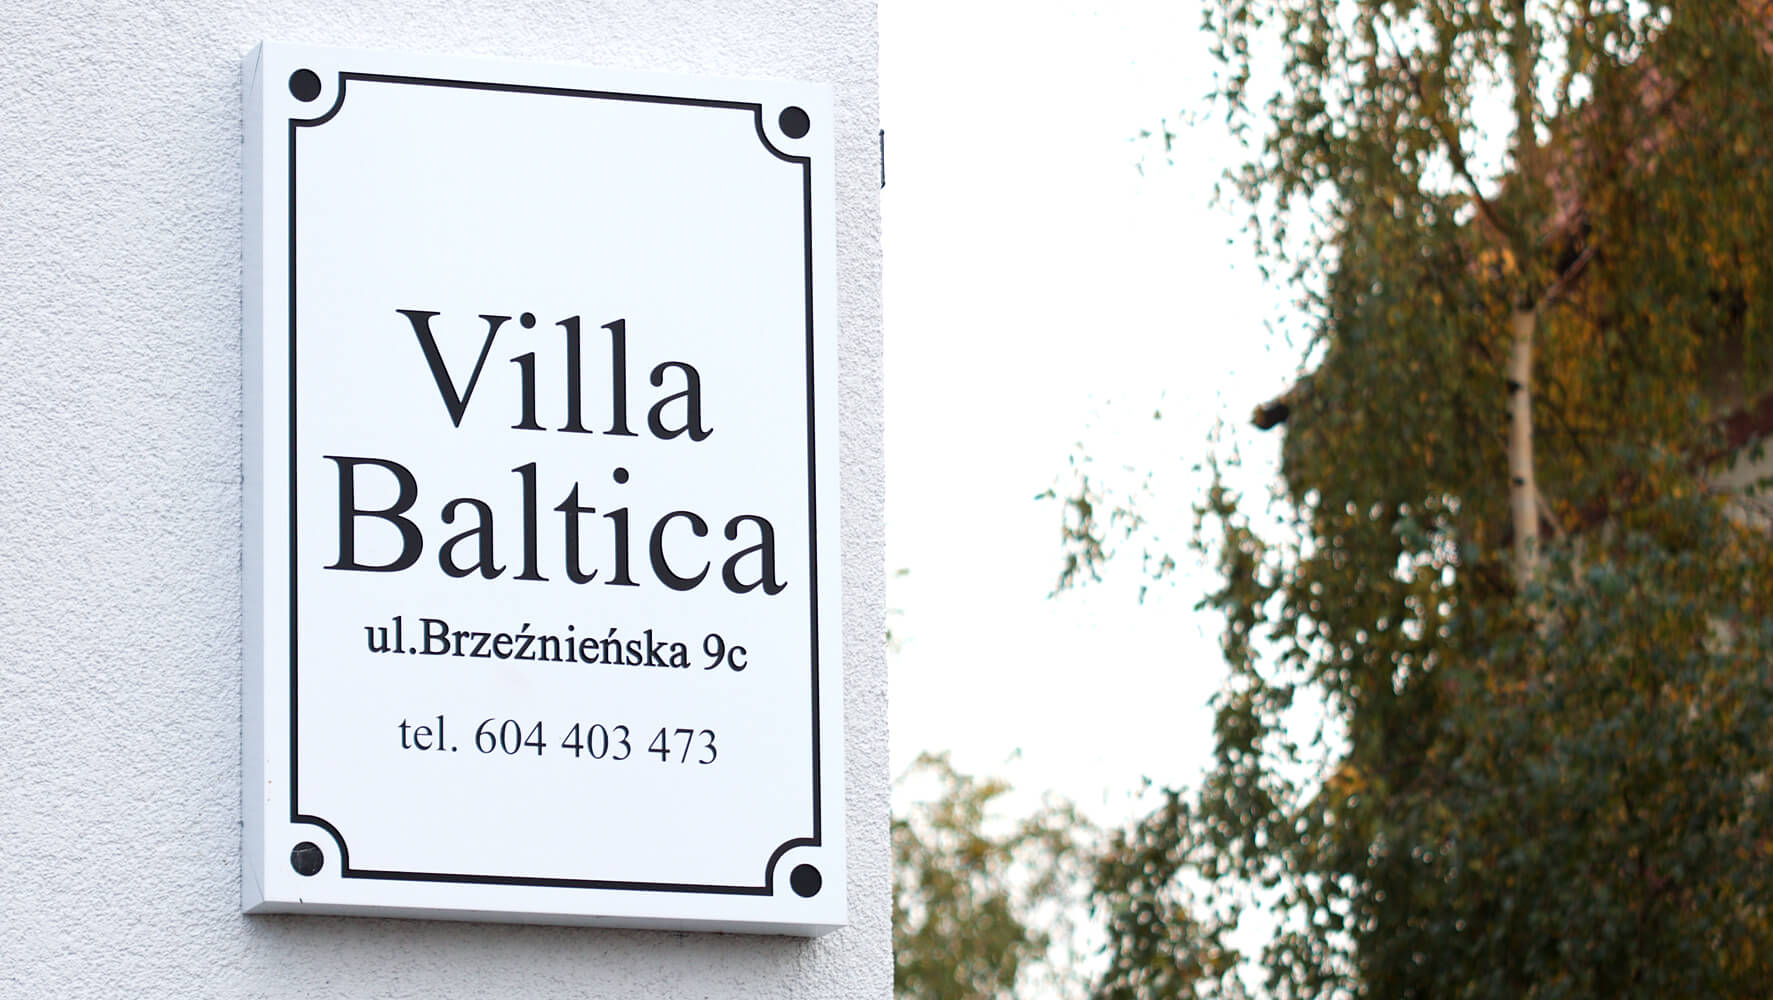 Villa Baltica - Villa Baltica - company's signboard on a dibond coffer in white matt